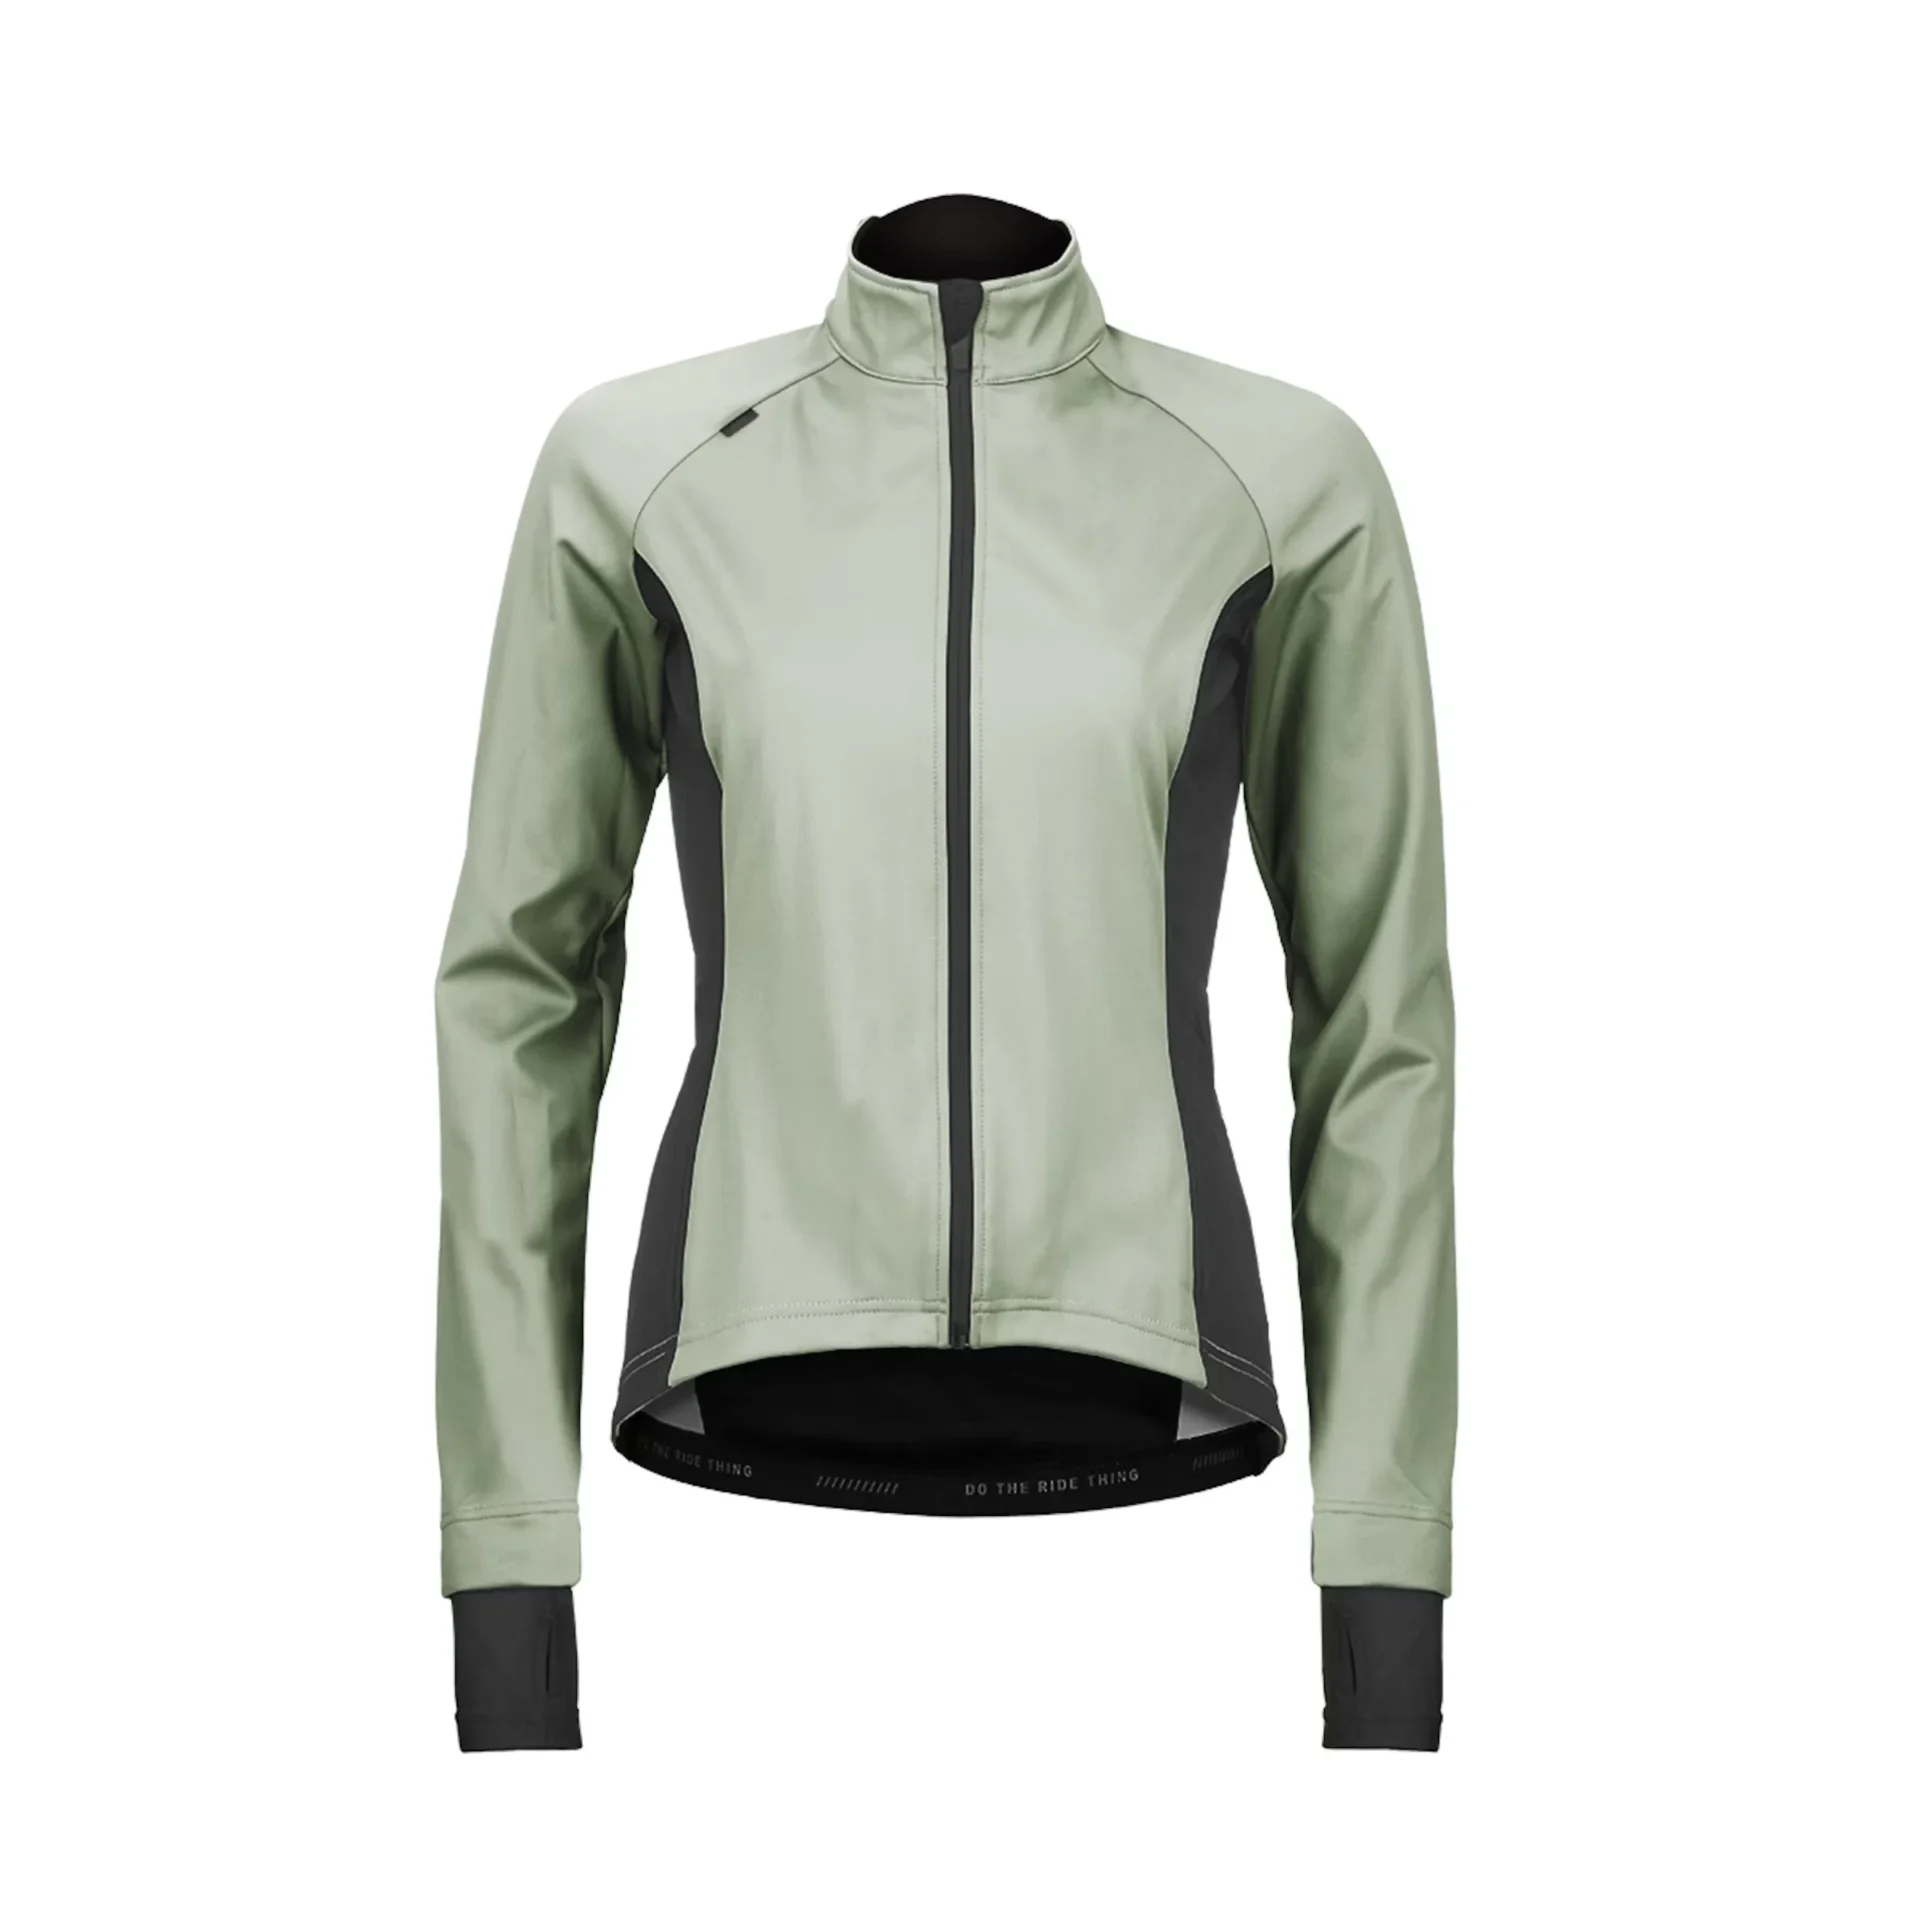 ROSE CORE thermo wind jacket W Damen Fahrradjacke oliv grün